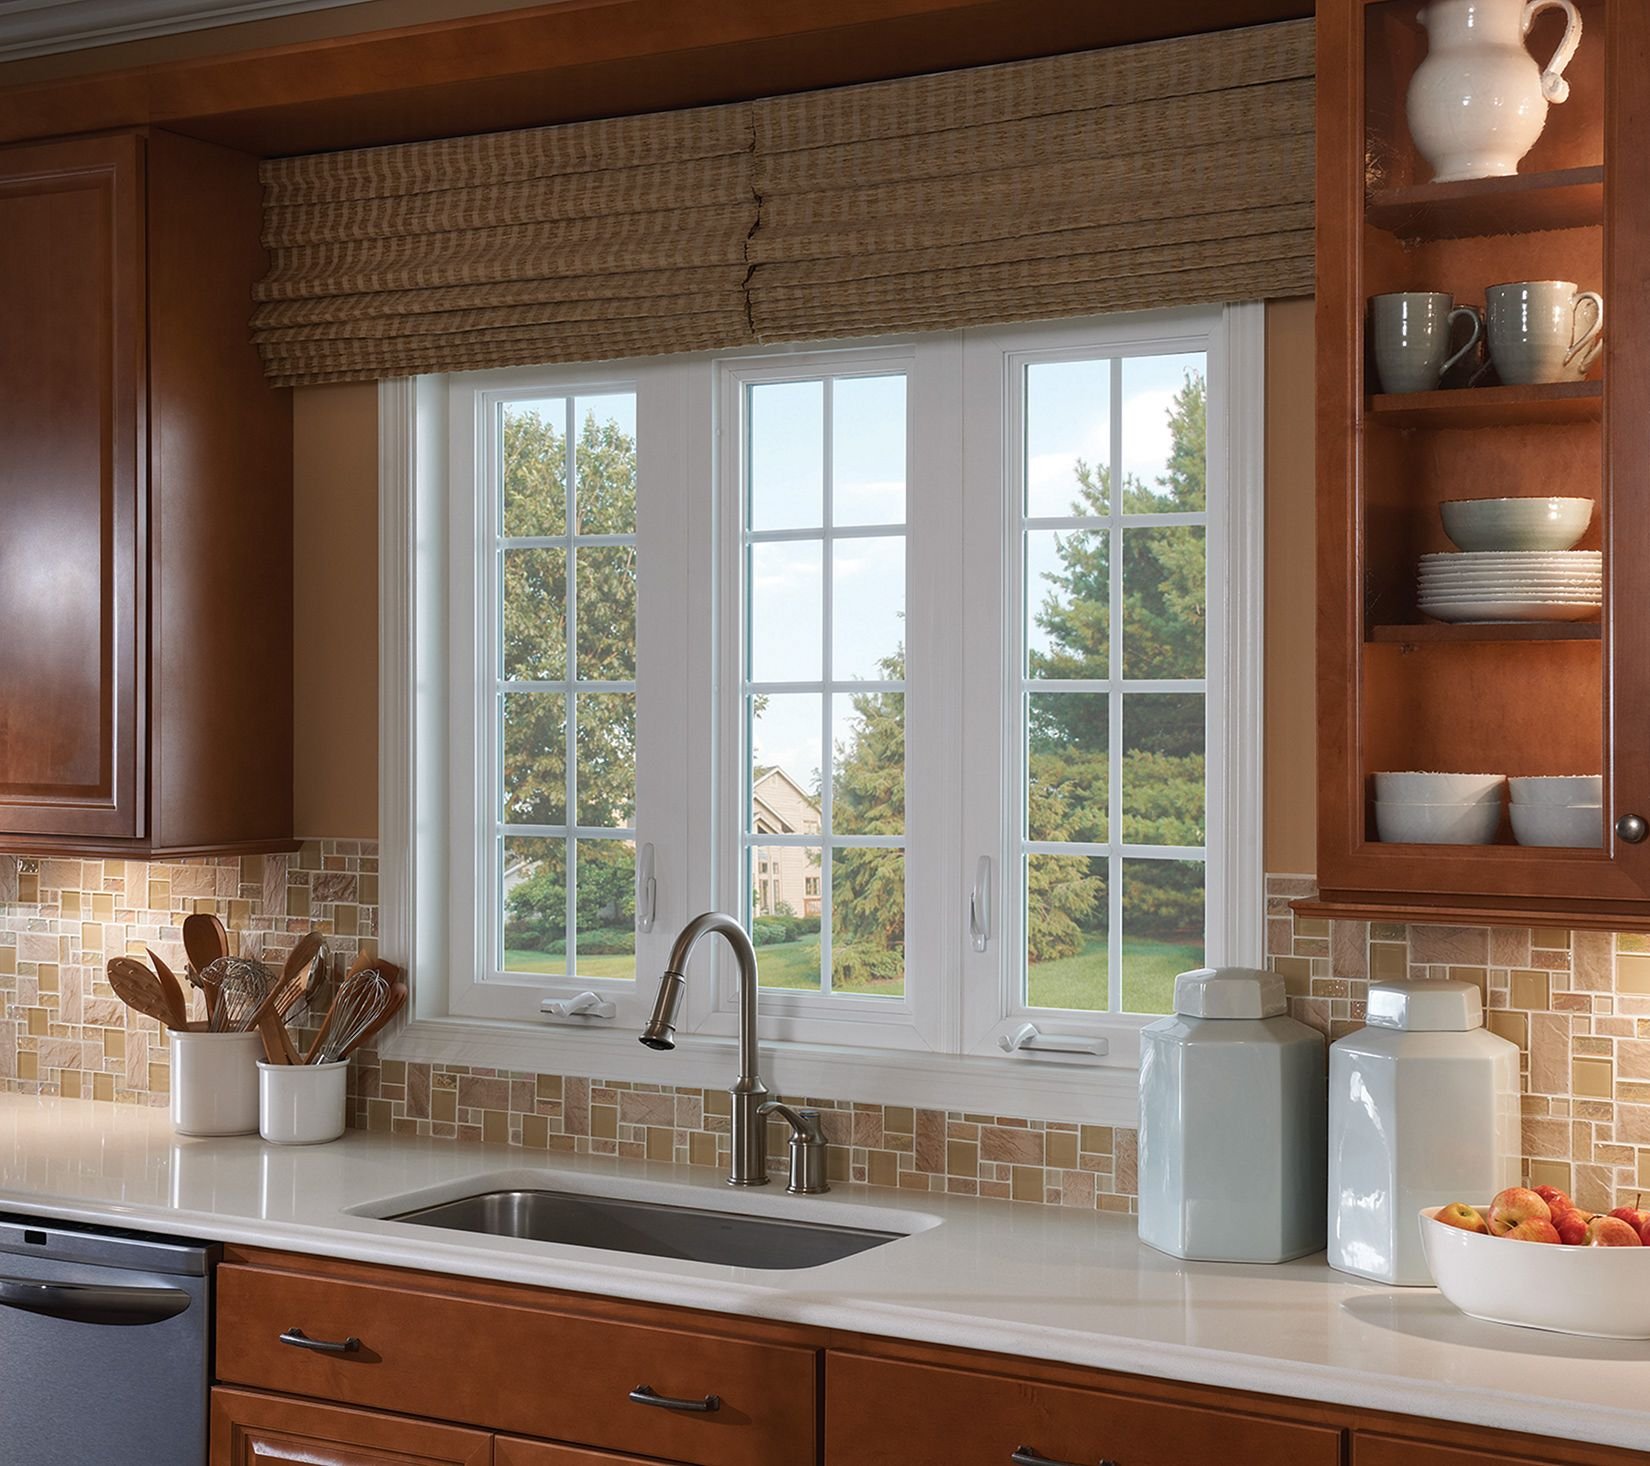 Кухня мойка у окна дизайн. Кухня с окном. Планировка кухни с окном. Планировка кухни с большим окном. Красивое окно на кухне.